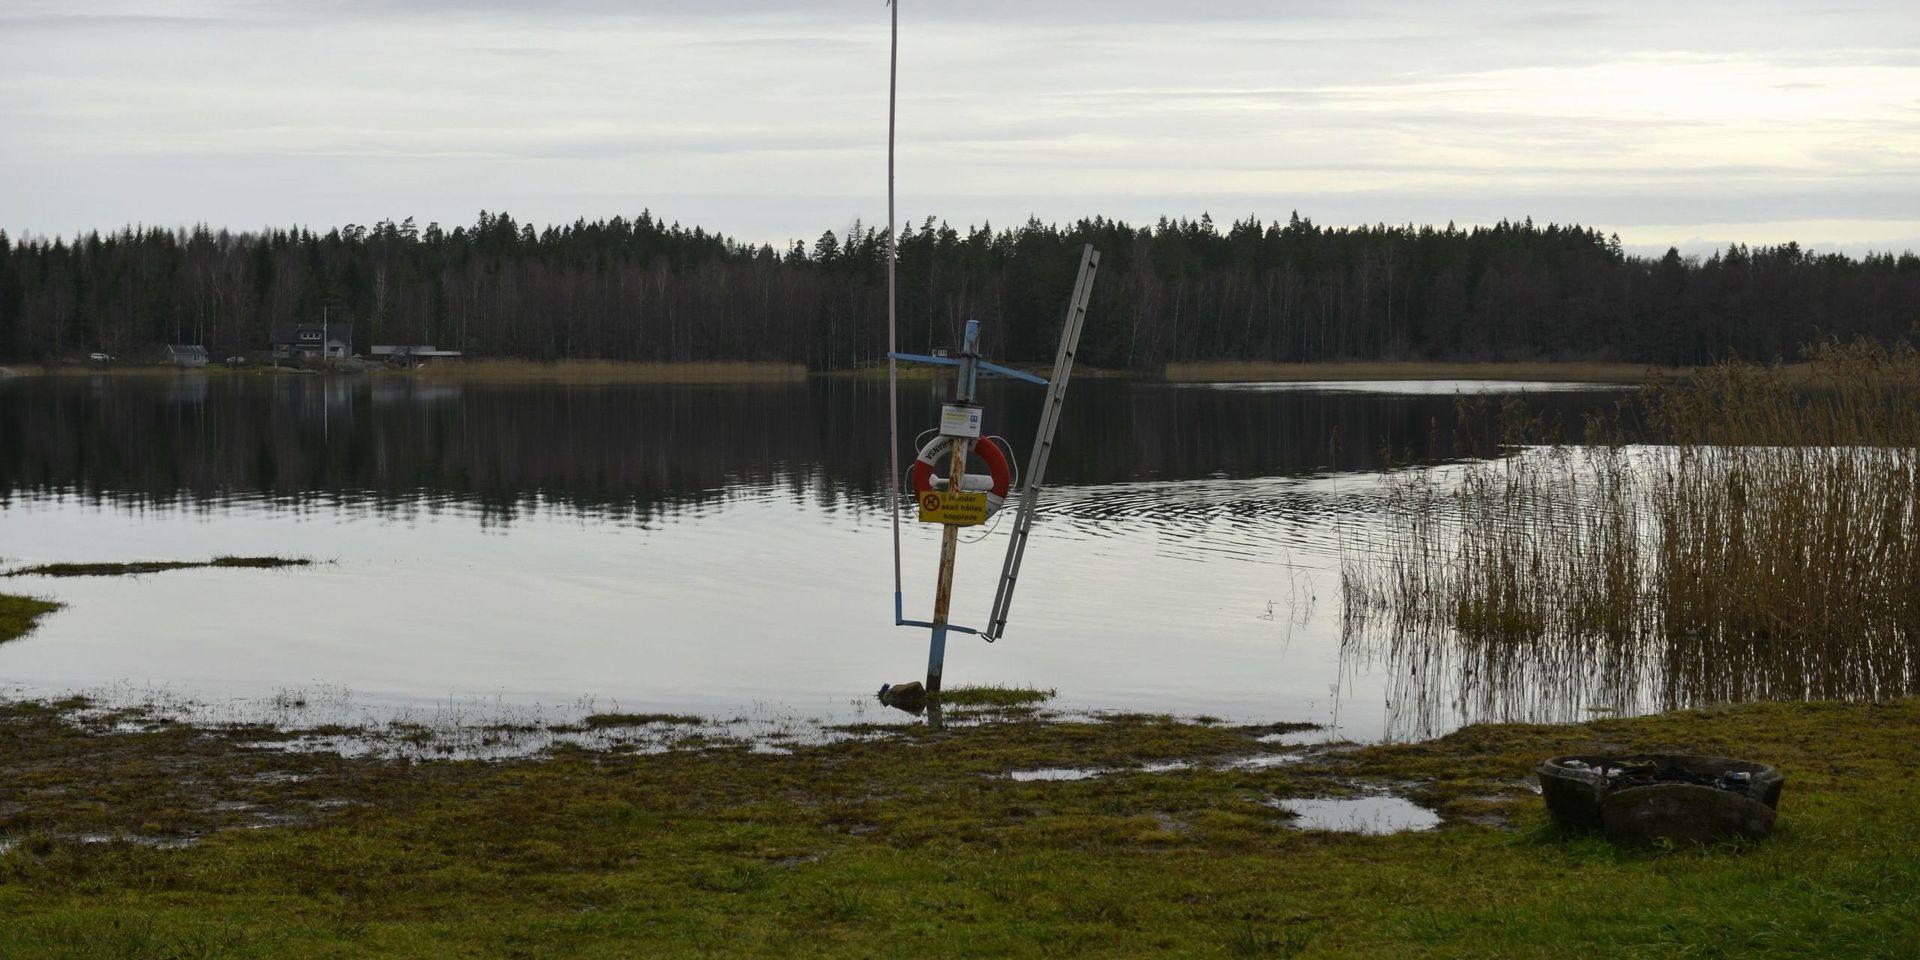 Badplatsen vid Ryrsjön, Väne Ryr där en kvinna i 70-årsåldern söktes på tisdagskvällen efter att ha anmälts försvunnen.